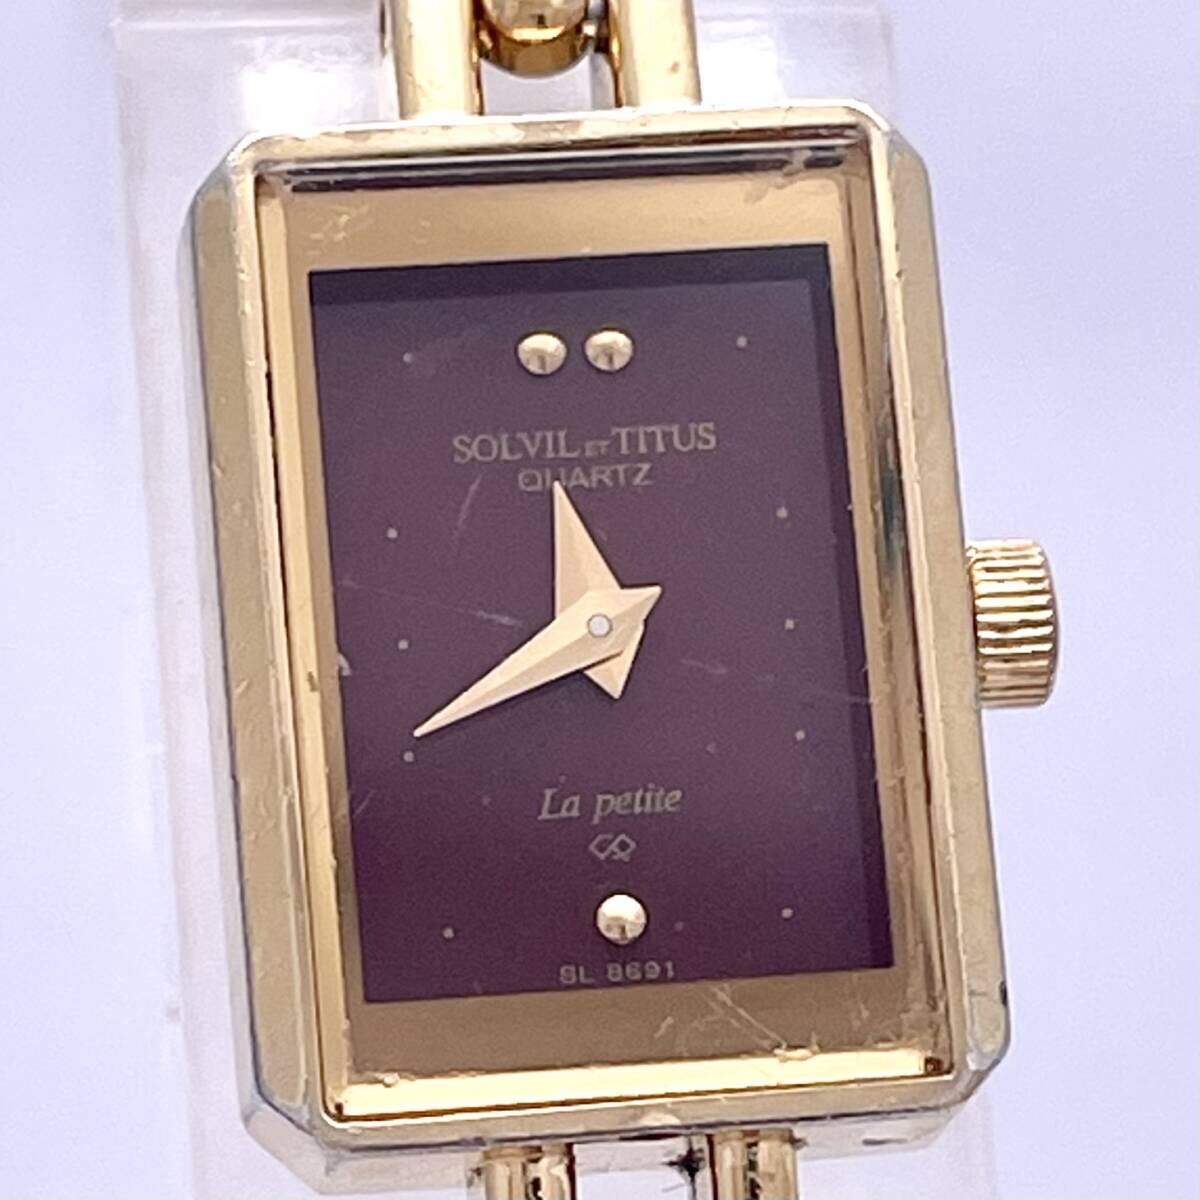 SOLVIL ET TITUS ソルビエタイタス la petitte SL 8691 腕時計 ウォッチ クォーツ quartz 金 ゴールド P389_画像4